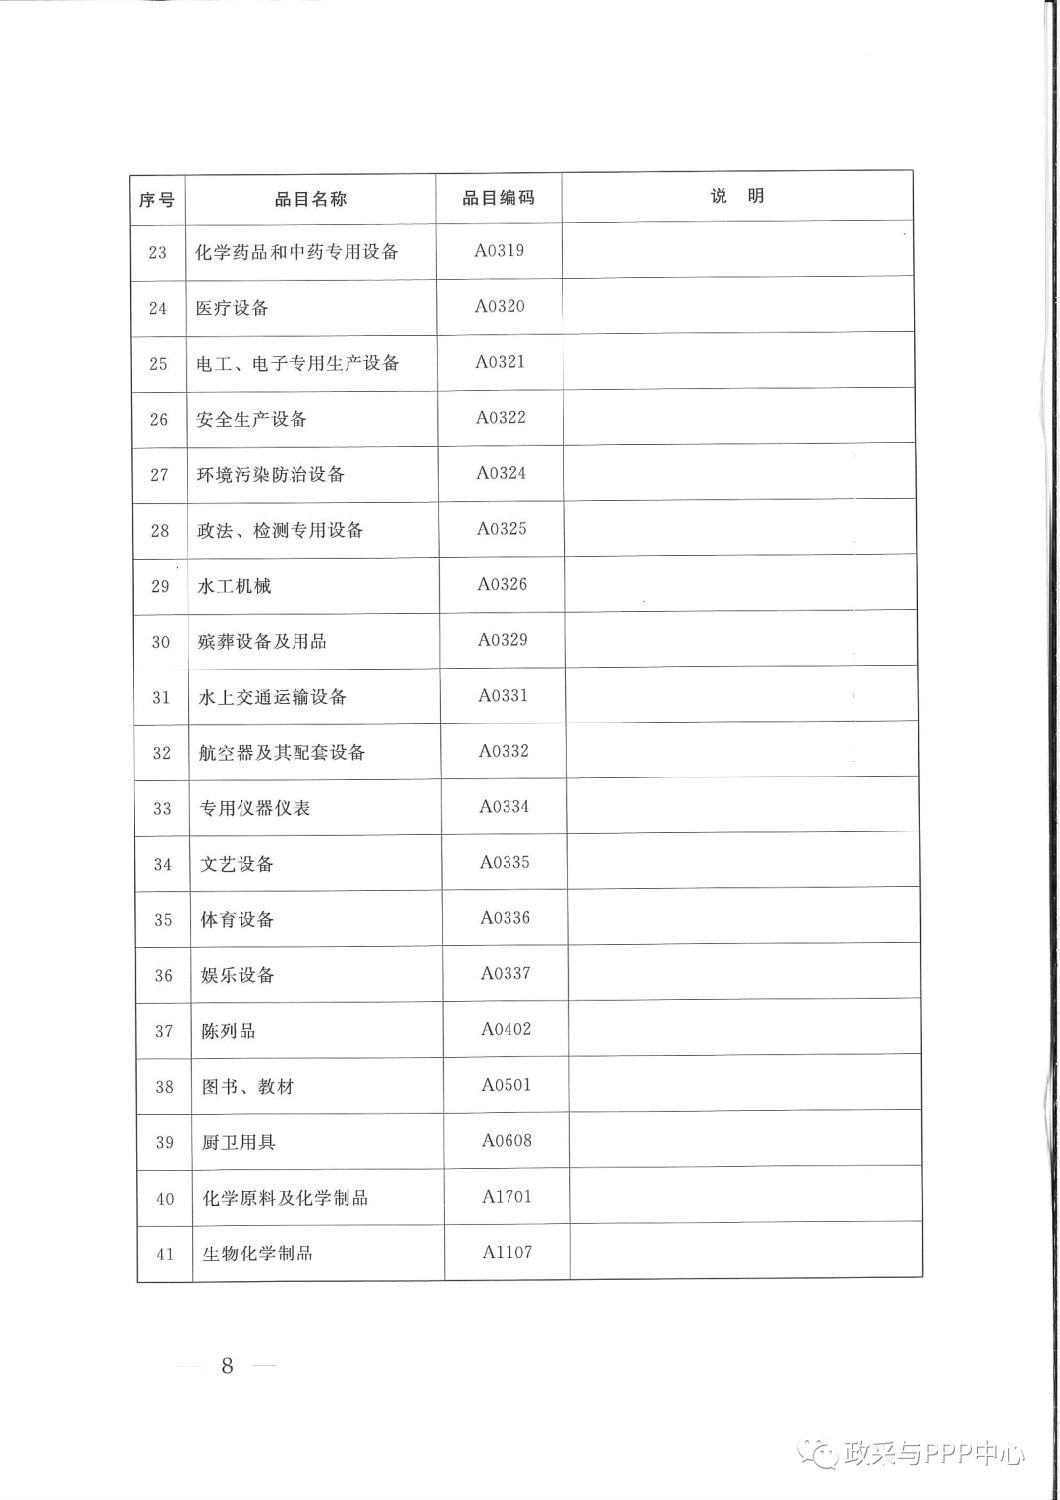 《陕西省人民政府办公厅关于印发2020年度政府集中采购目录及采购限额标准的通知》